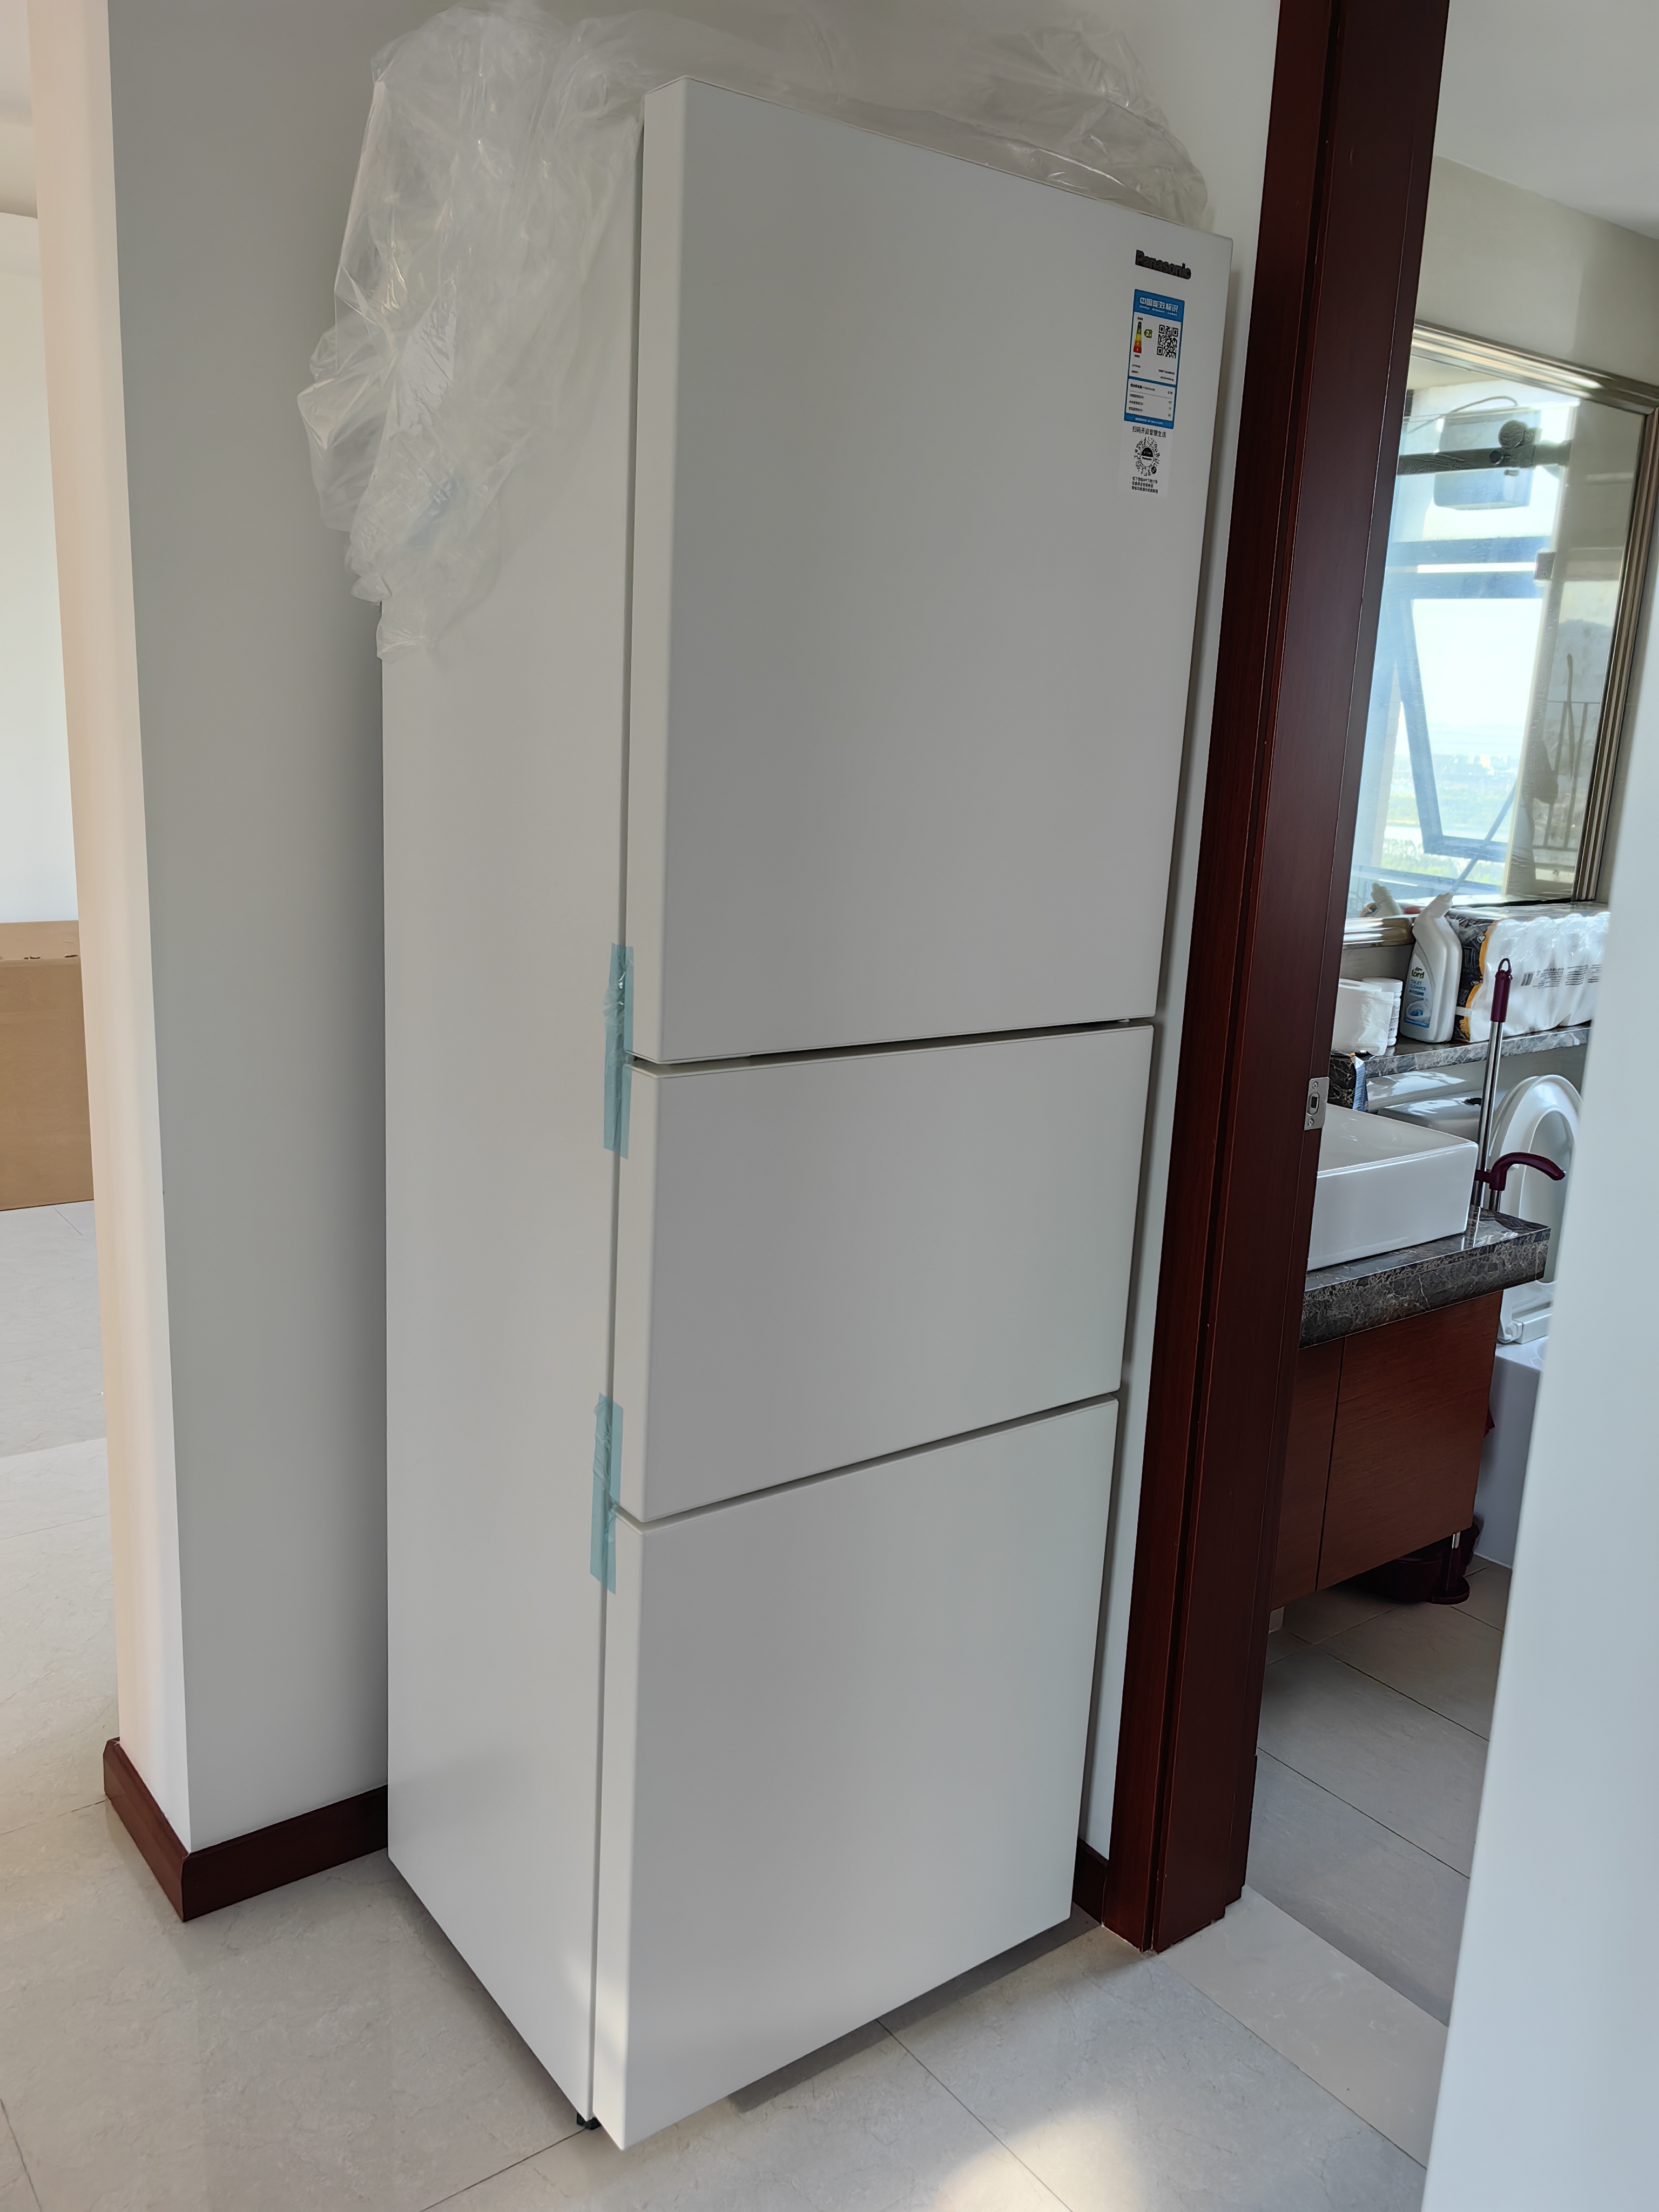 [咨询大优惠]松下冰箱270升三门冰箱小型家用 60cm超薄自由嵌入式风冷无霜电冰箱265升级NR-EC27WPB-W晒单图